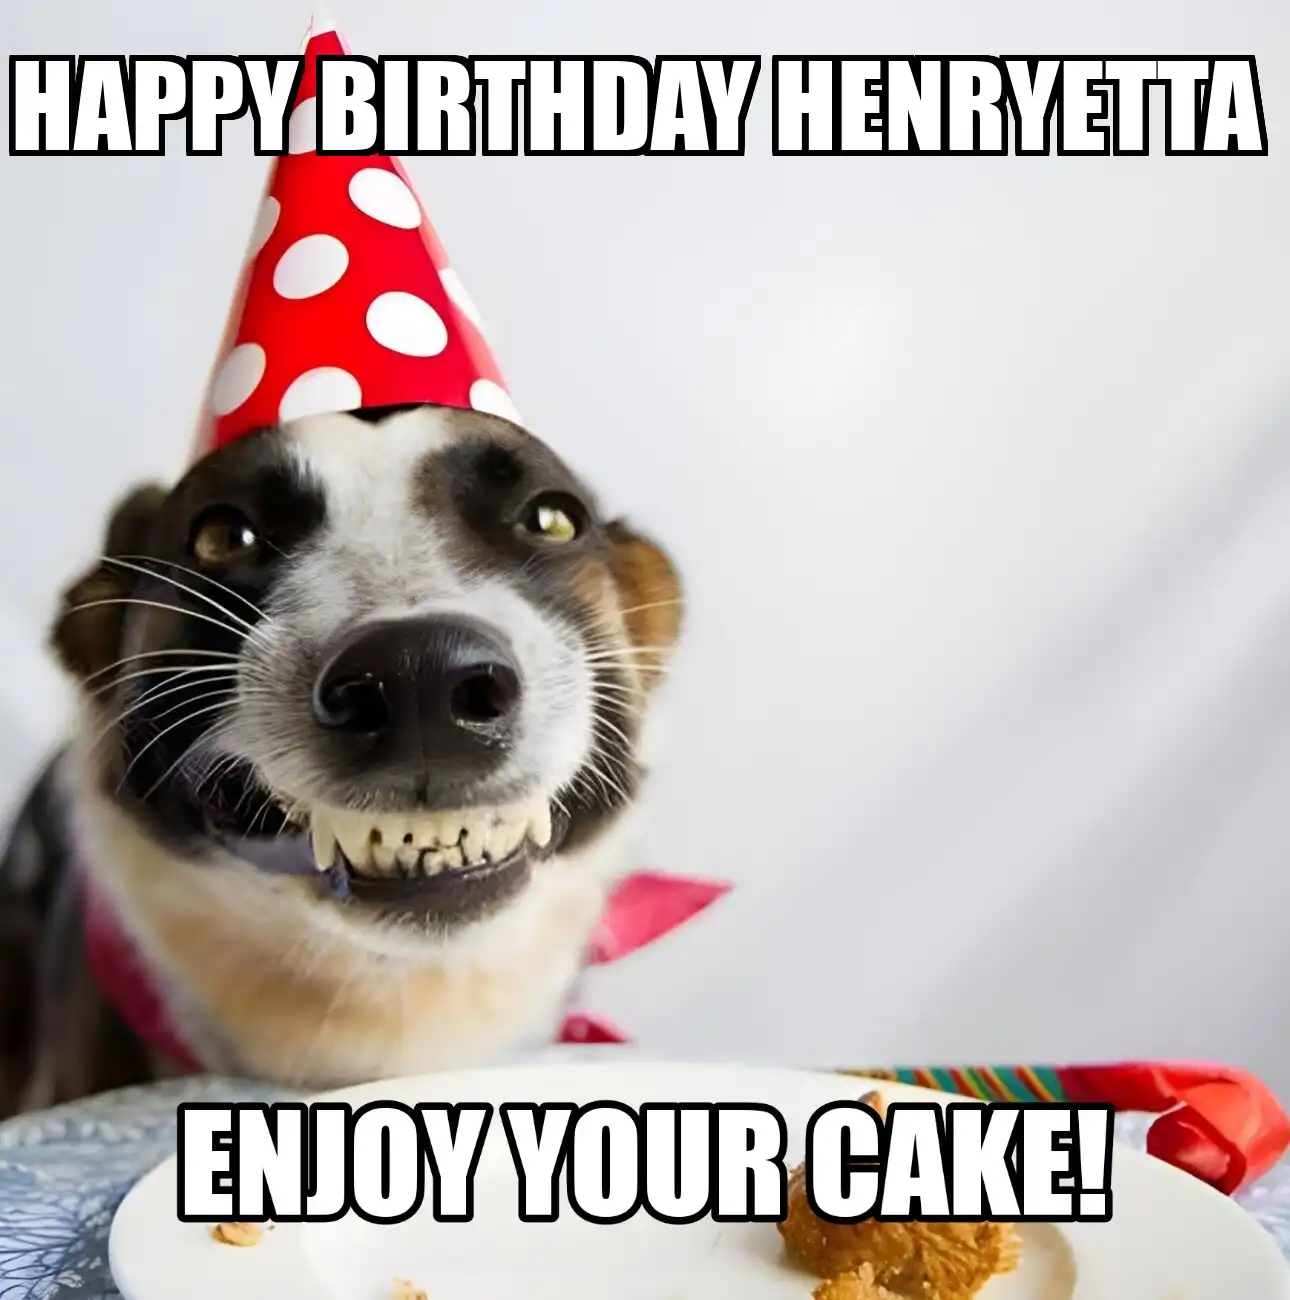 Happy Birthday Henryetta Enjoy Your Cake Dog Meme